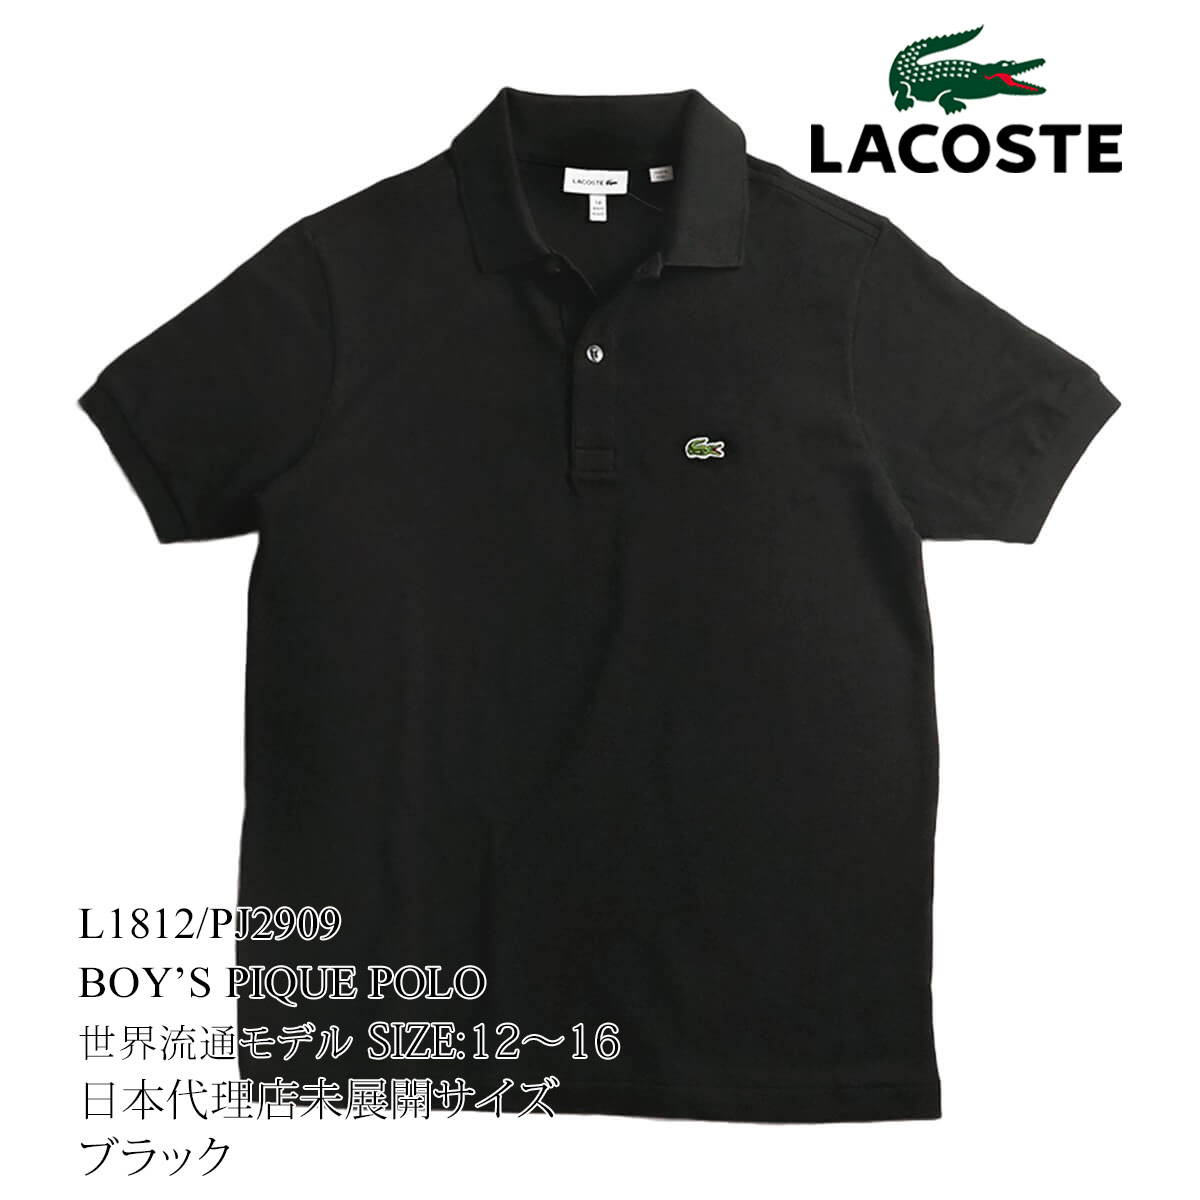 ラコステ LACOSTE PJ2909/L1812 ボーイズ 半袖 ポロシャツ 世界流通モデル ｜ 定番 鹿の子 Classic Pique Polo  綿 コットン100％ ホワイト ネイビー ブラック